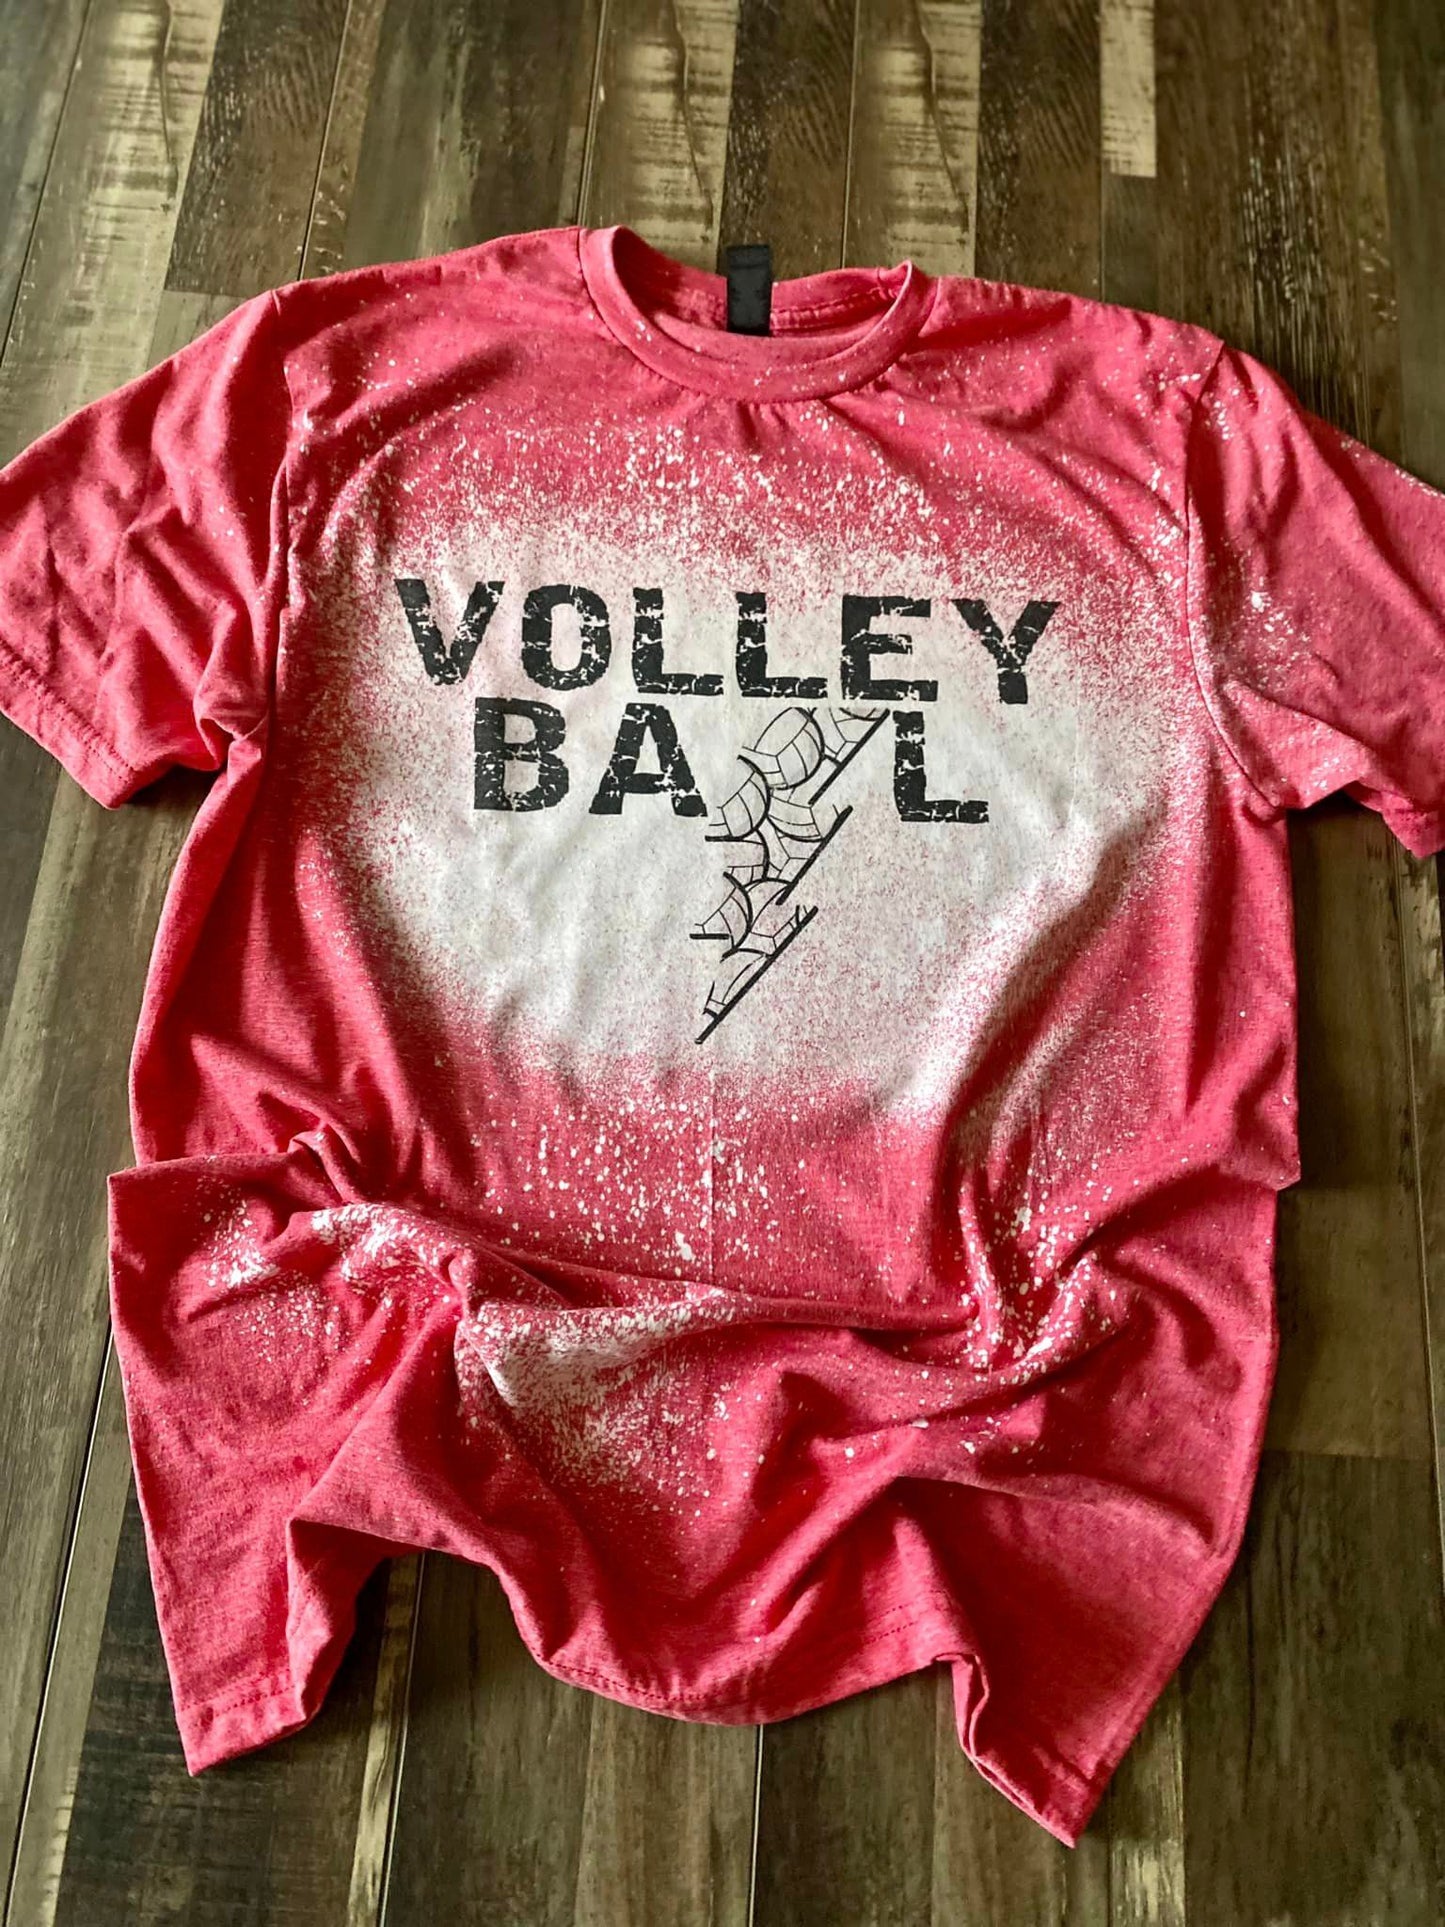 Volleyball bleach tee